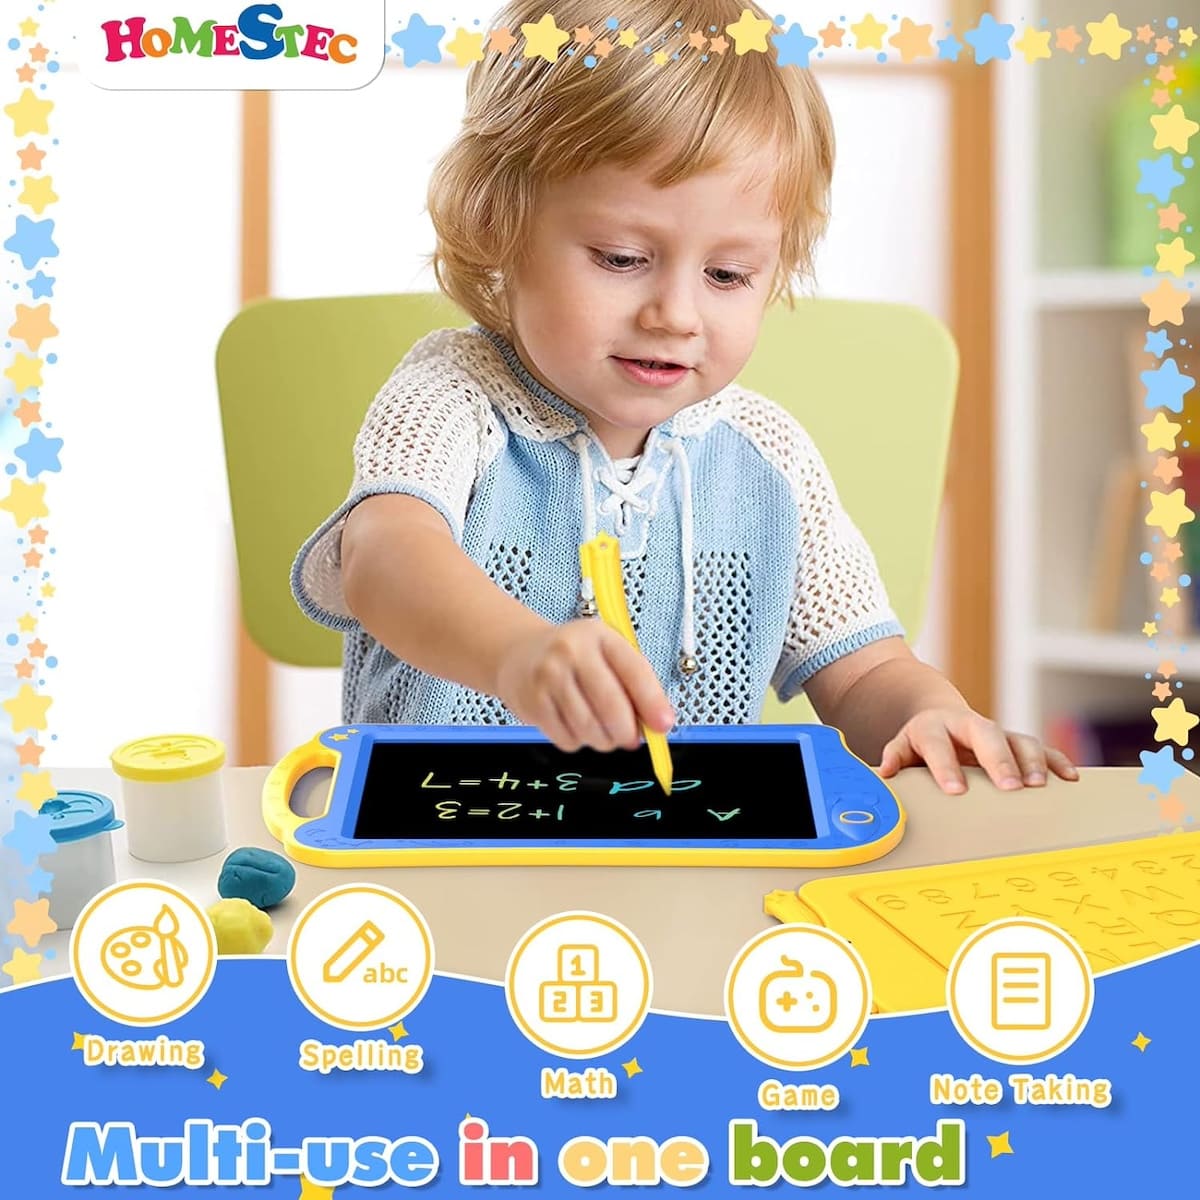 Magische tablet voor tekenen met LCD-display voor kinderen